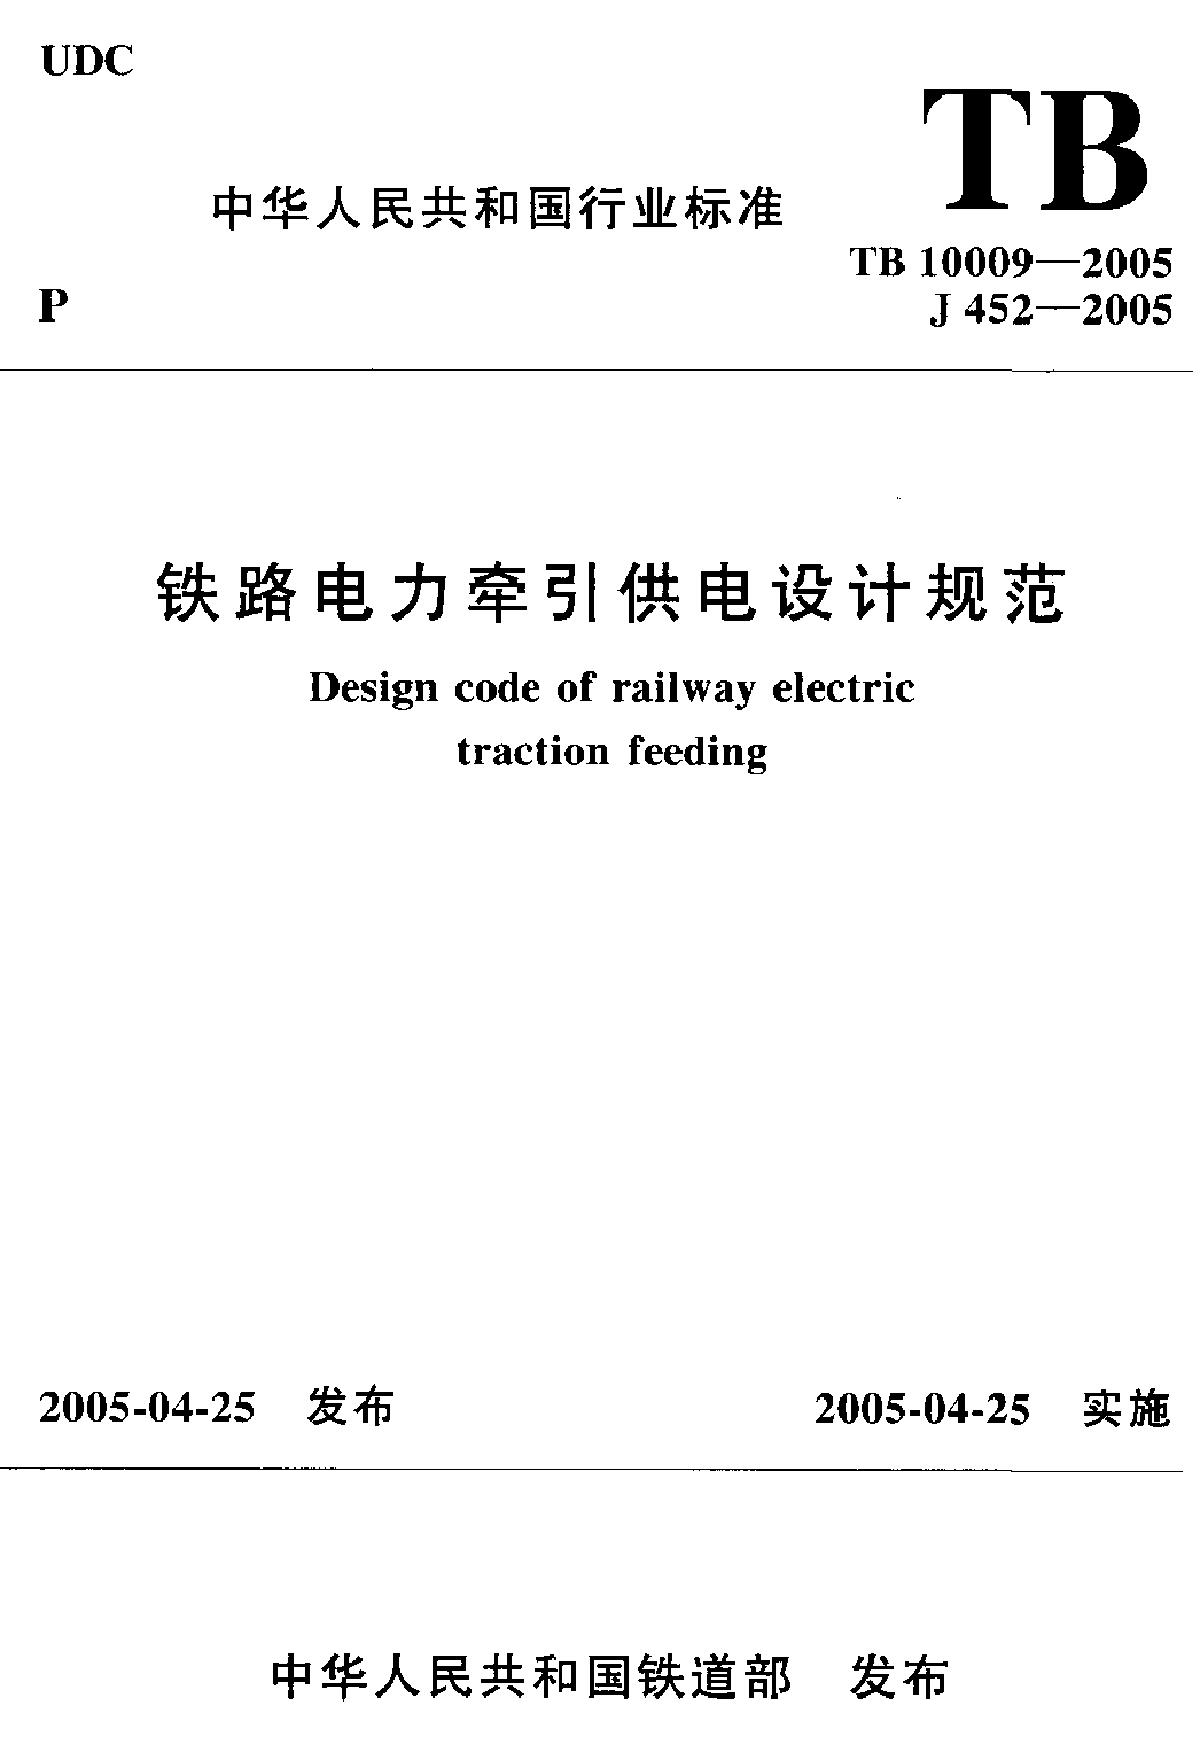 TB 10009-2005 铁路电力牵引供电设计规范